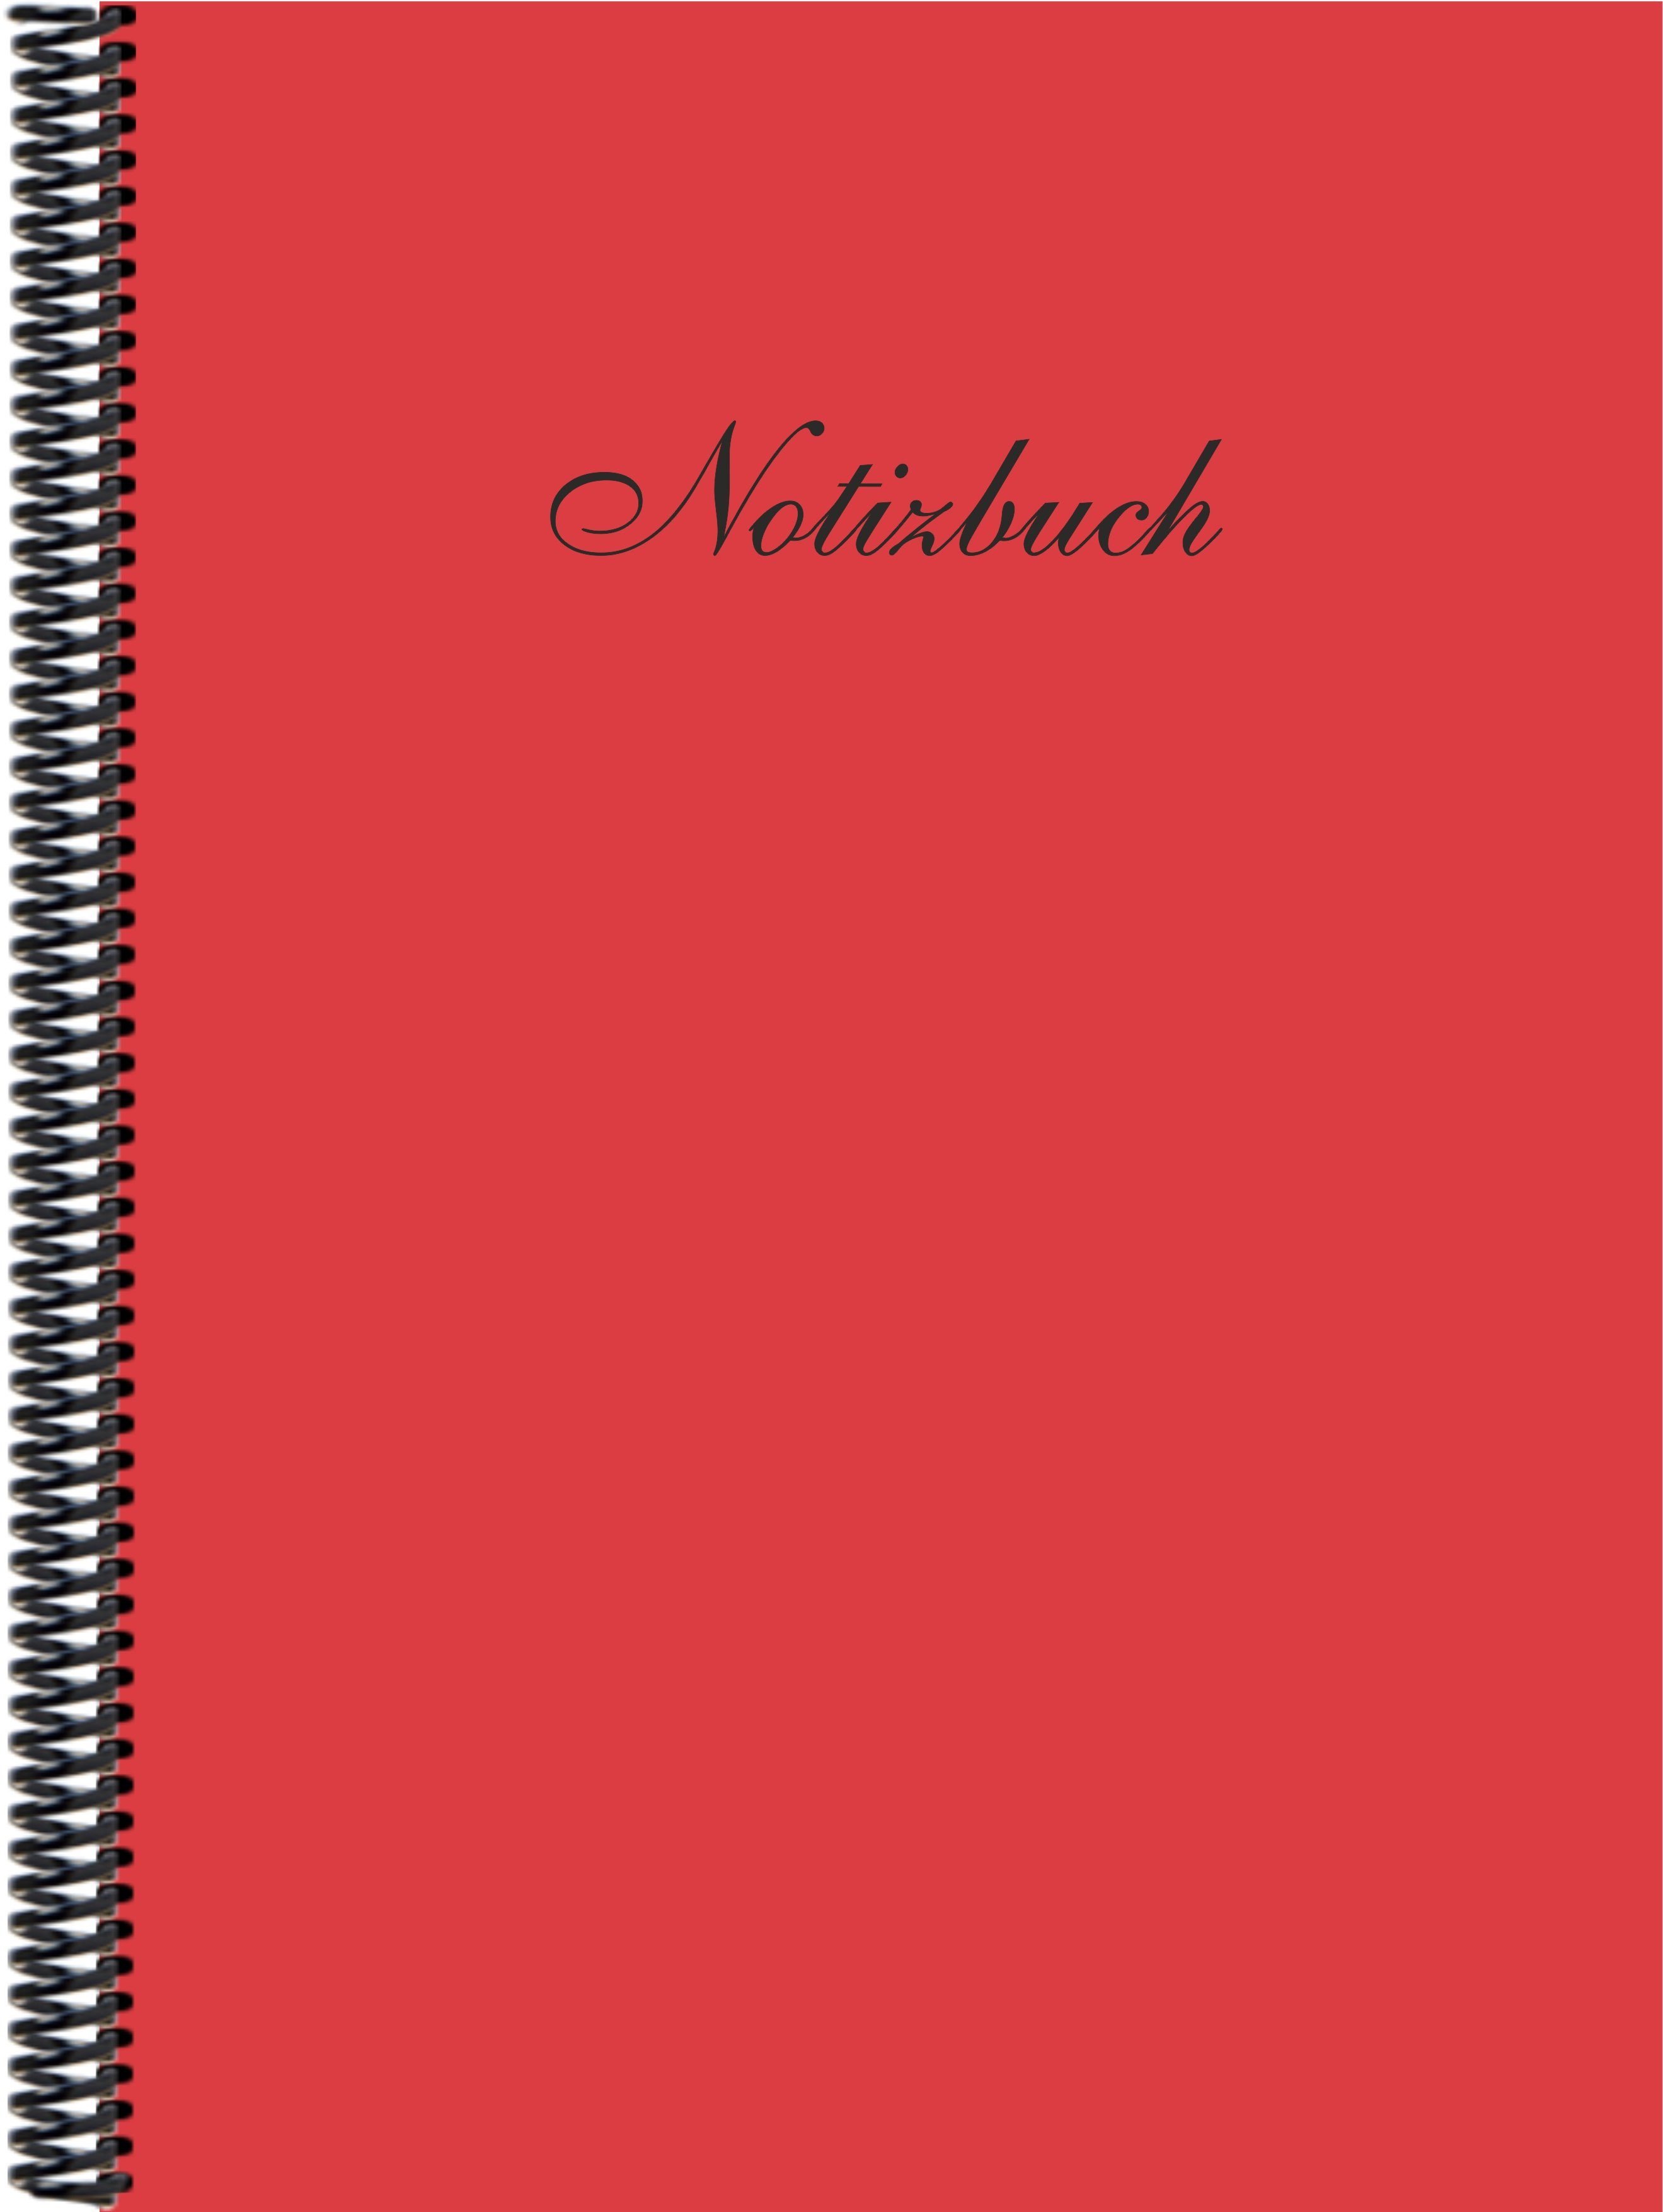 Notizbuch Notizbuch DINA4 in Verlag hibiscus Trendfarbe E&Z liniert, der Gmbh